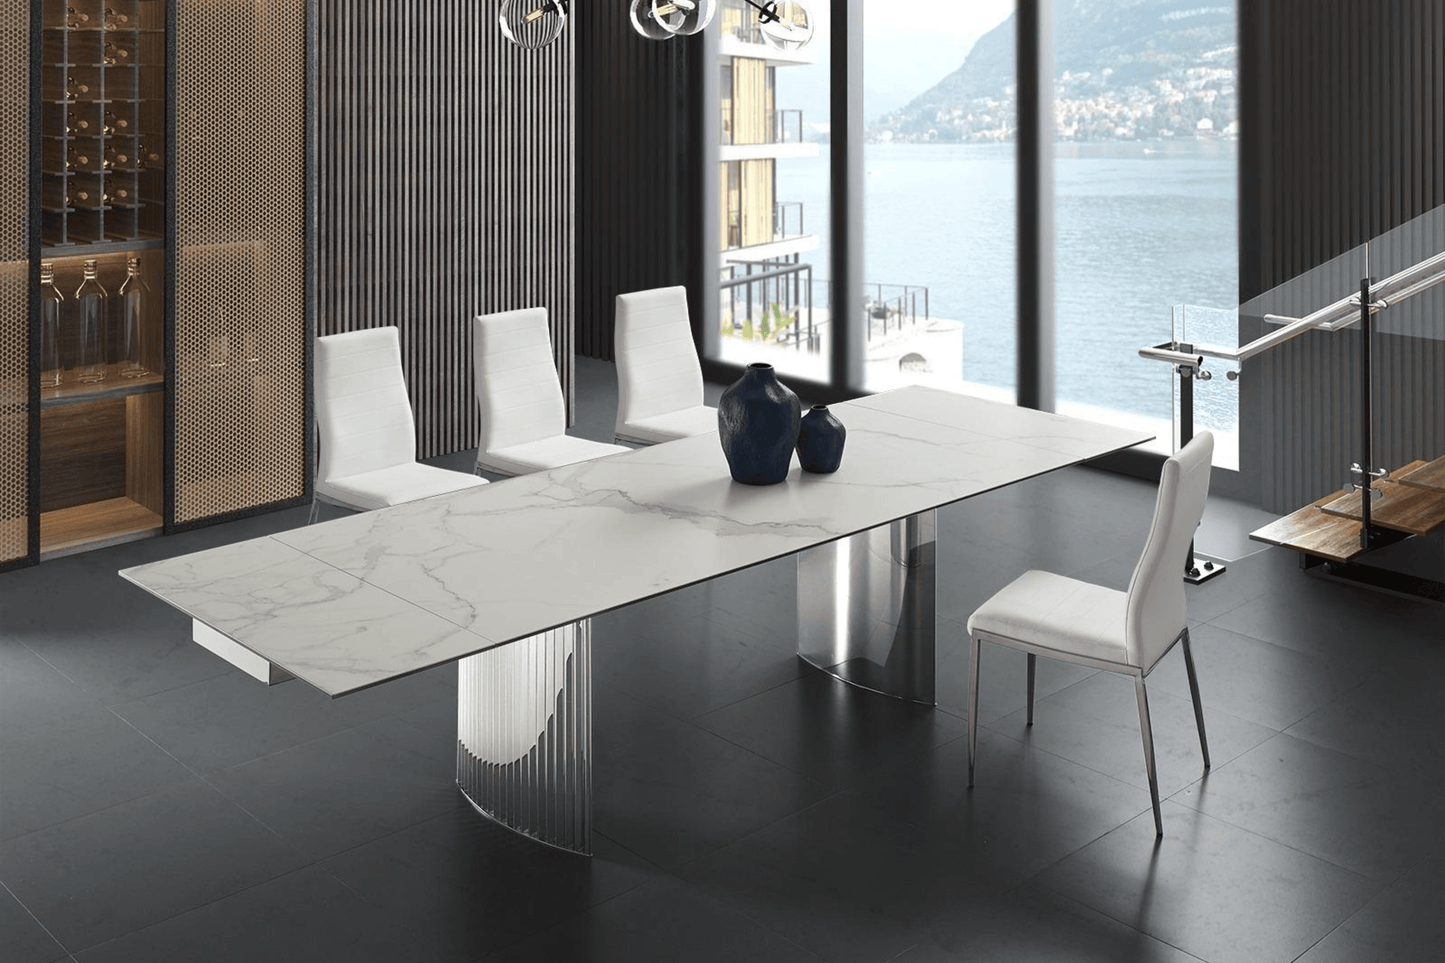 Firenze Dining Chair White Model CB-511WH - Venini Furniture 